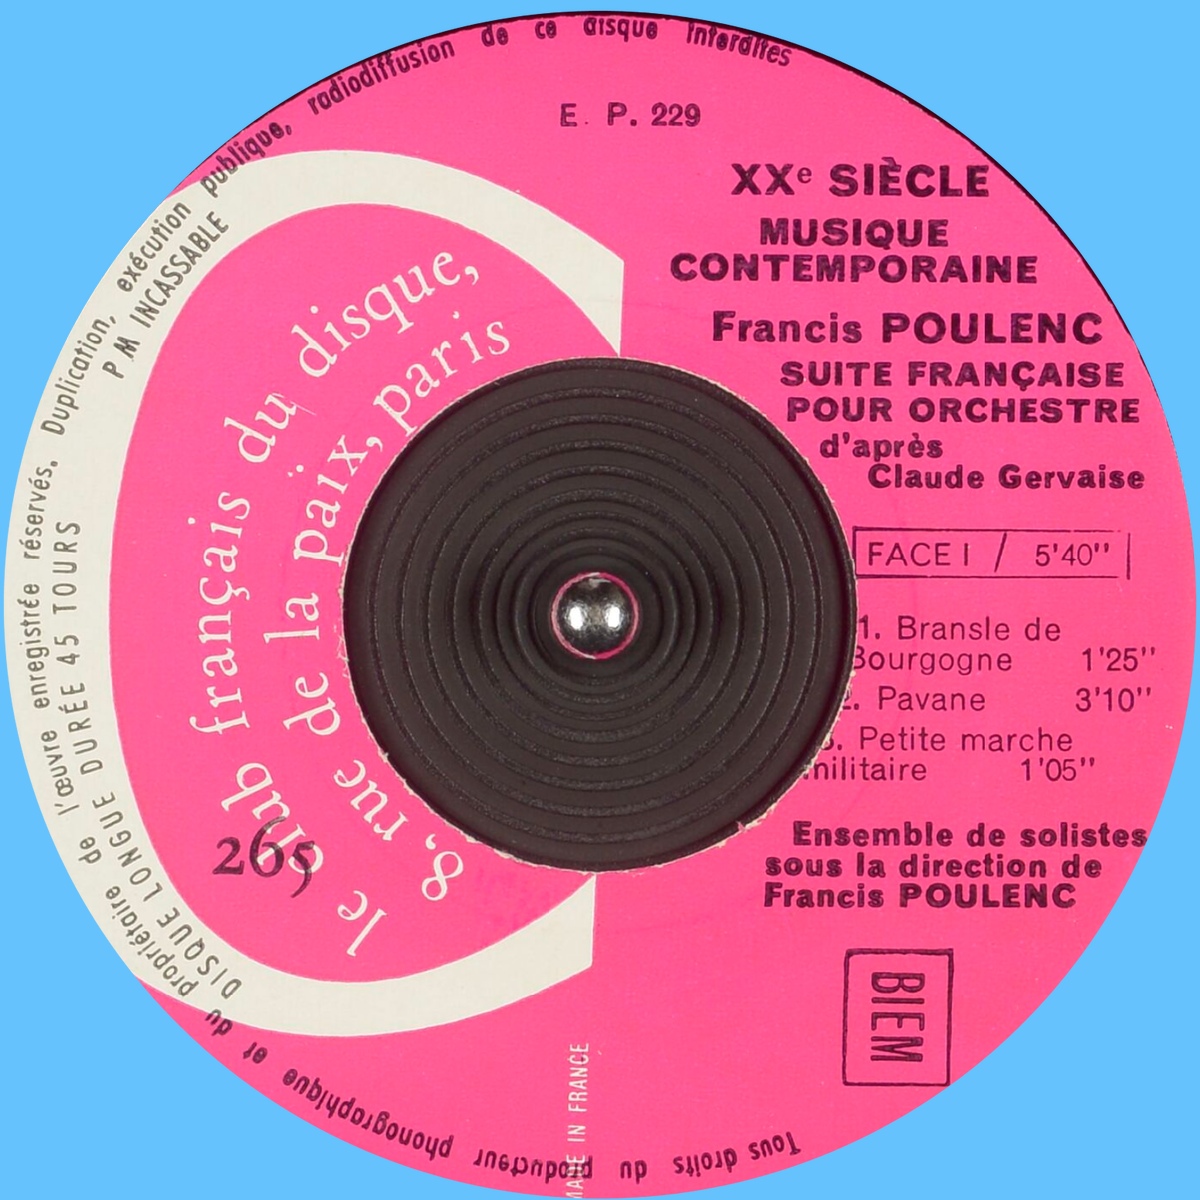 Recto disque CFD 265, Club Français du Disque